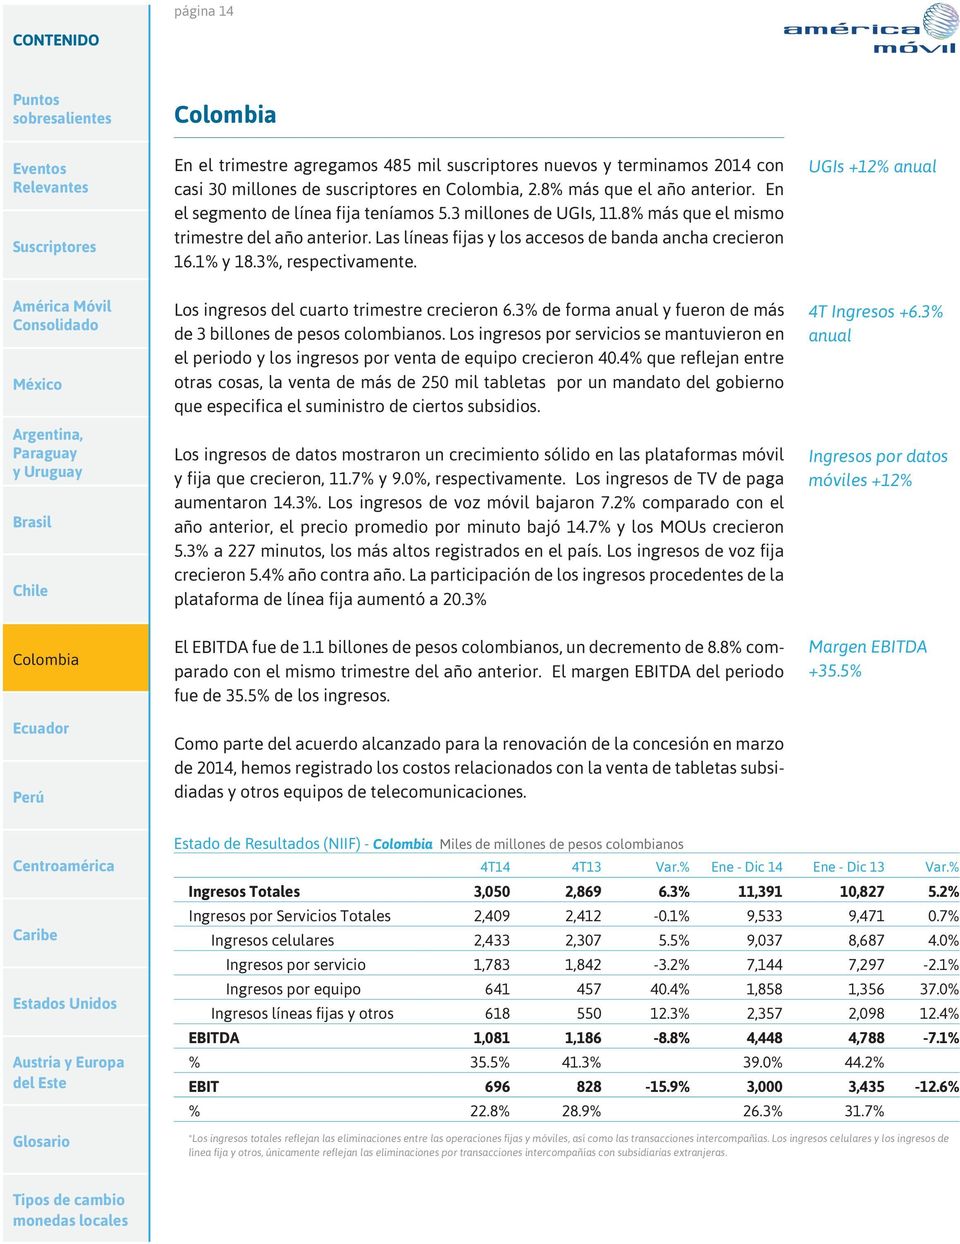 UGIs +12% anual Los ingresos del cuarto trimestre crecieron 6.3% de forma anual y fueron de más de 3 billones de pesos colombianos.